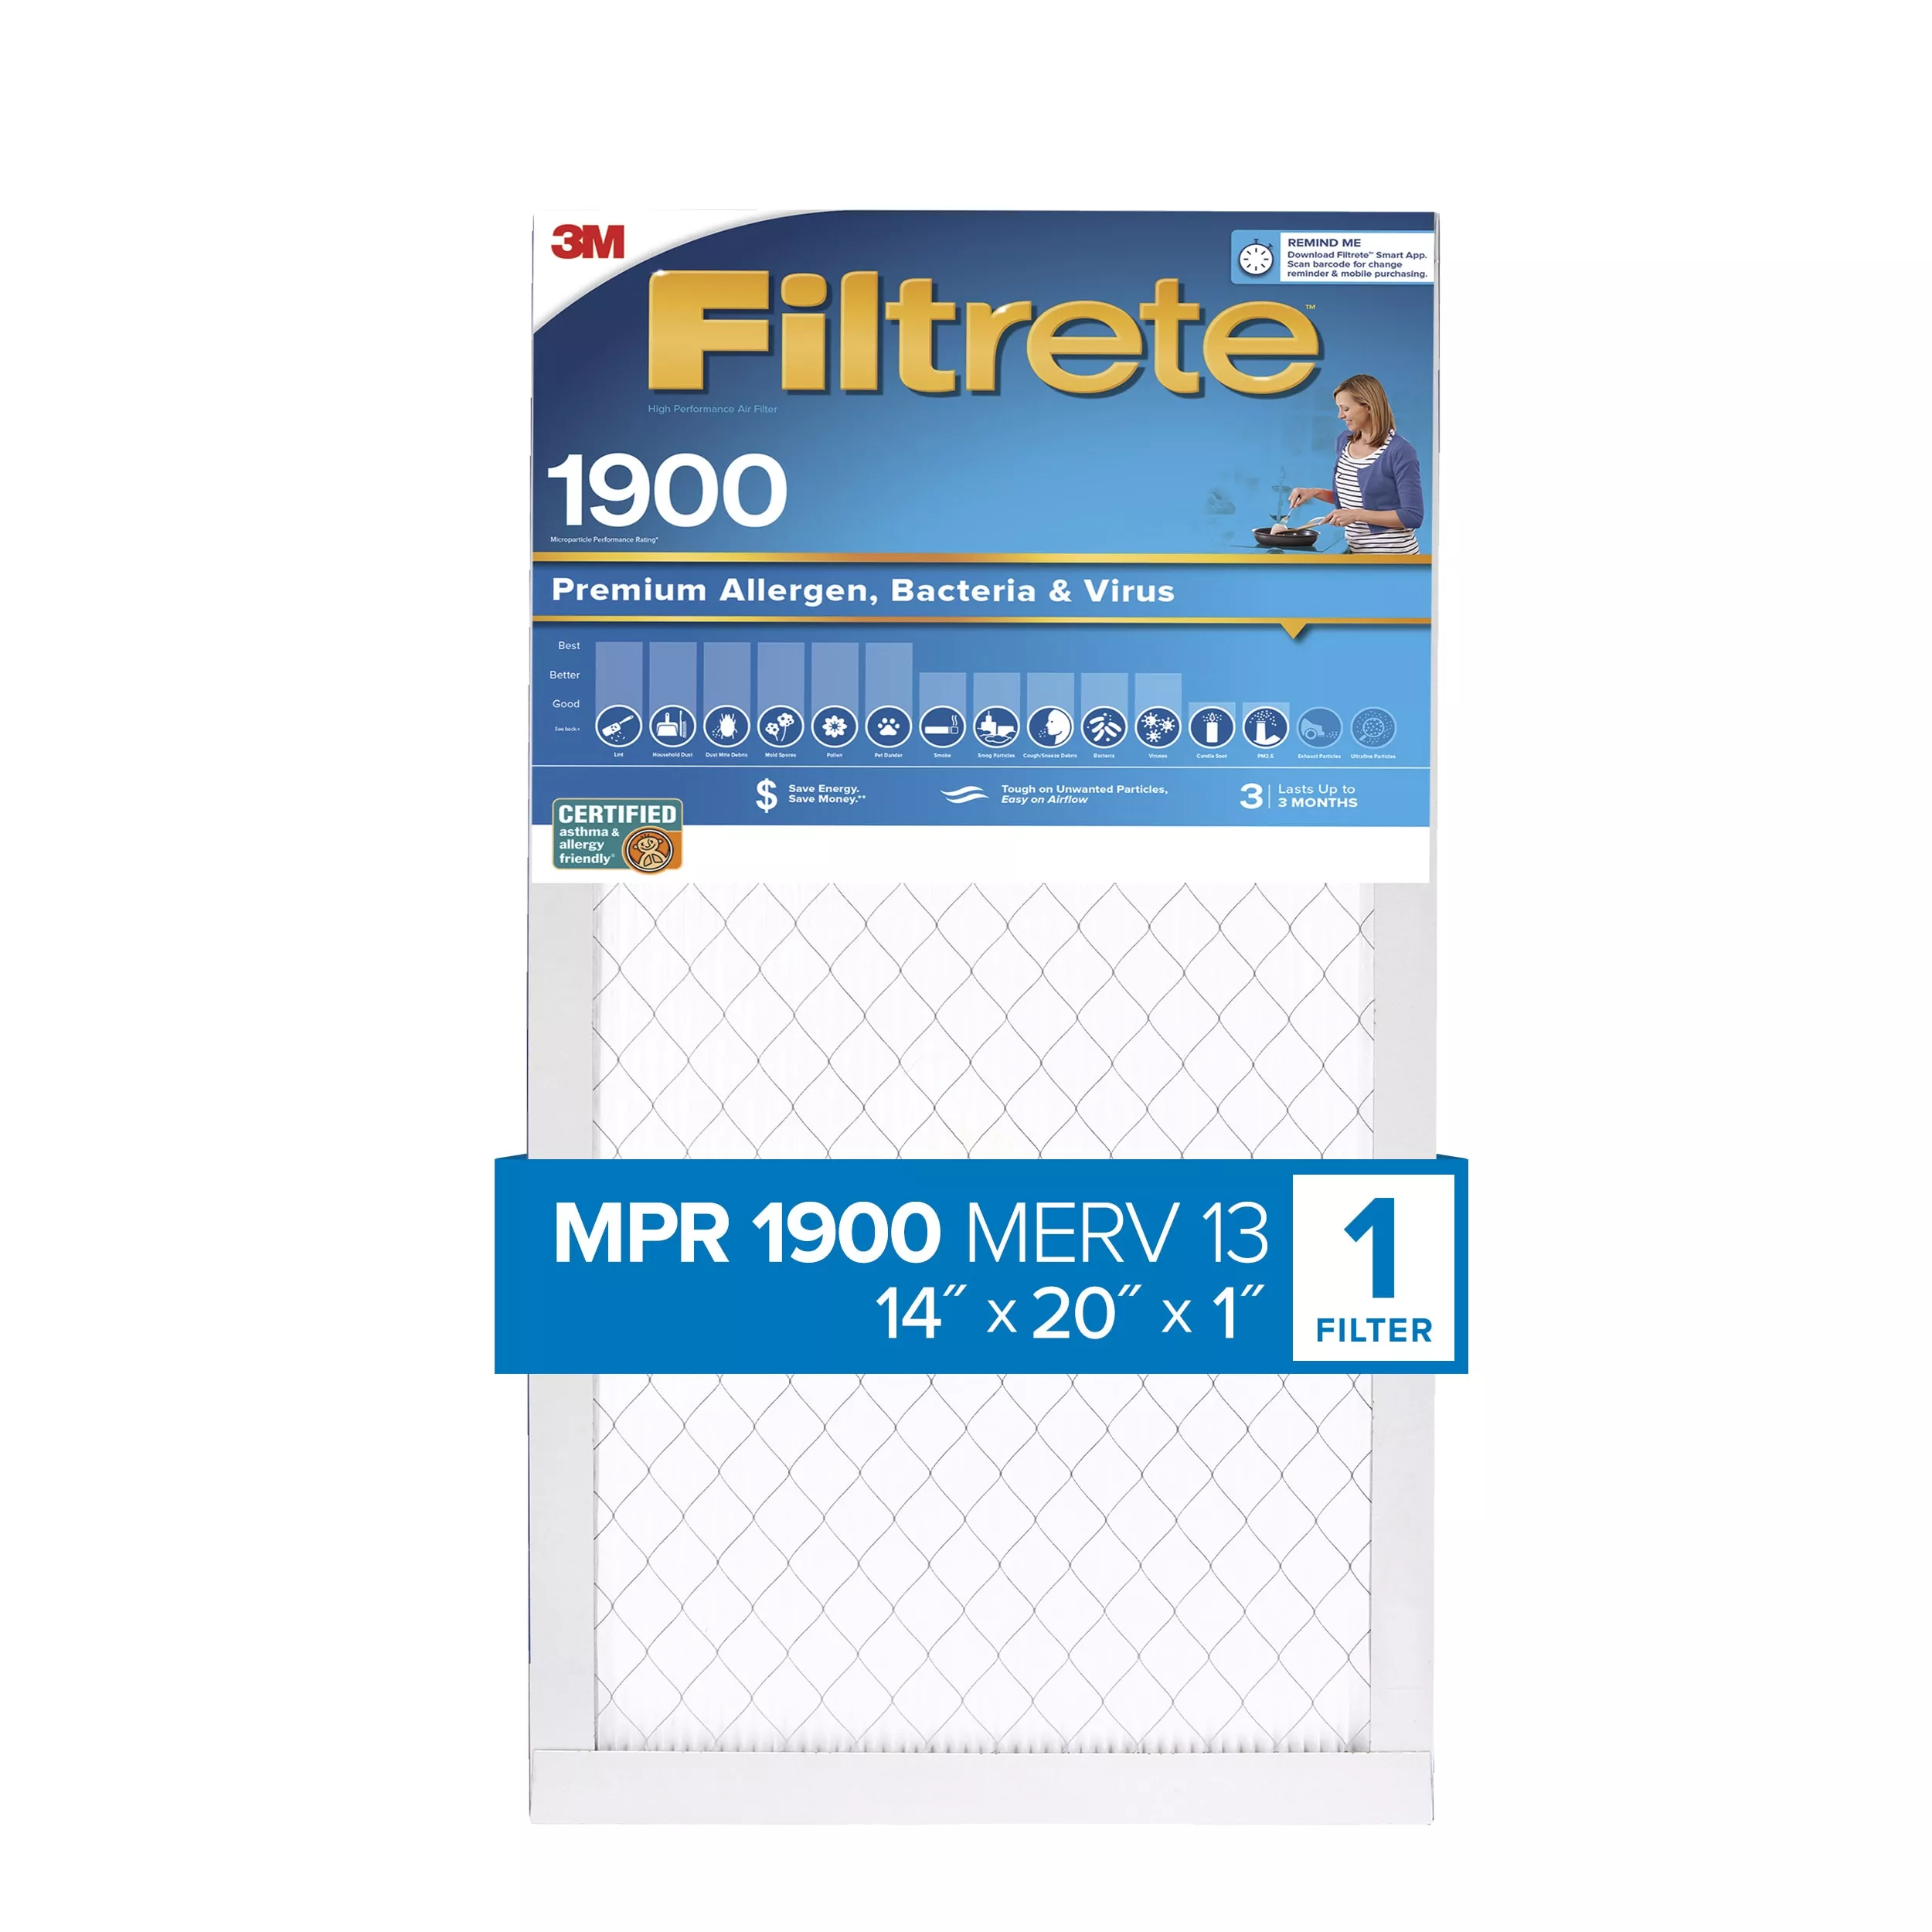 Filtrete™ High Performance Air Filter 1900 MPR UA05-4, 14 in x 20 in x 1 in (35.5 cm x 50.8 cm x 2.5 cm)